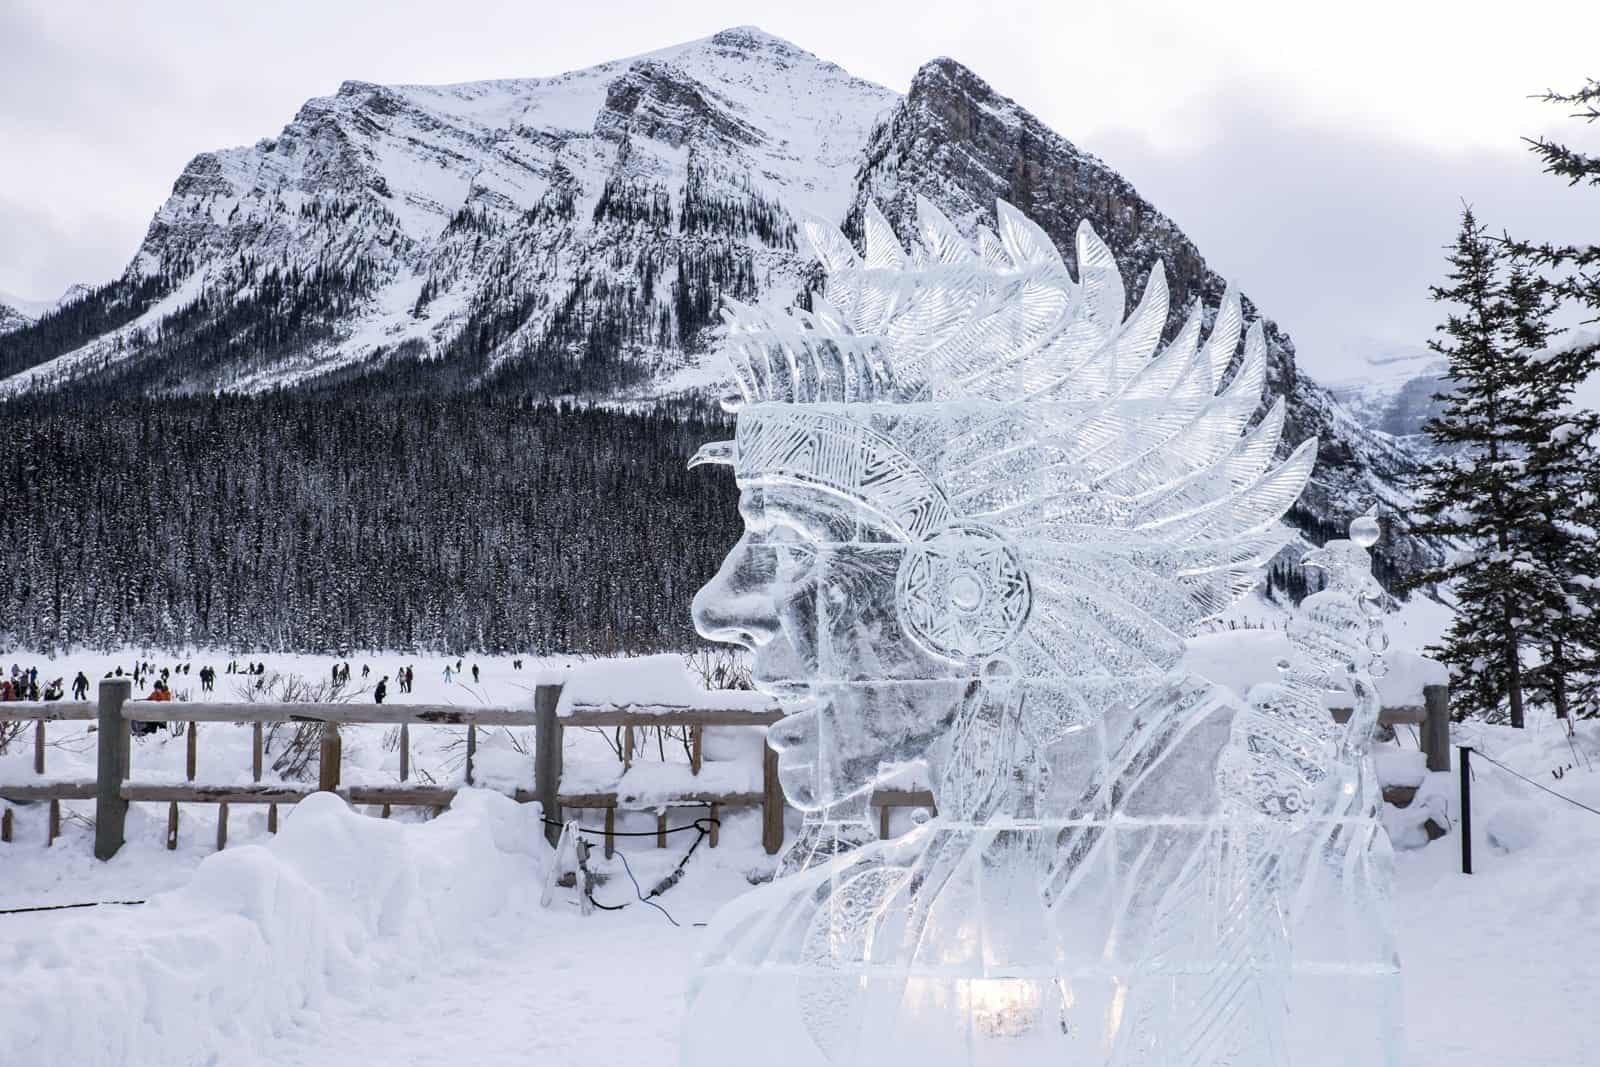 Ice Magic Festival, Chateau Lake Louise, Banff, Canada